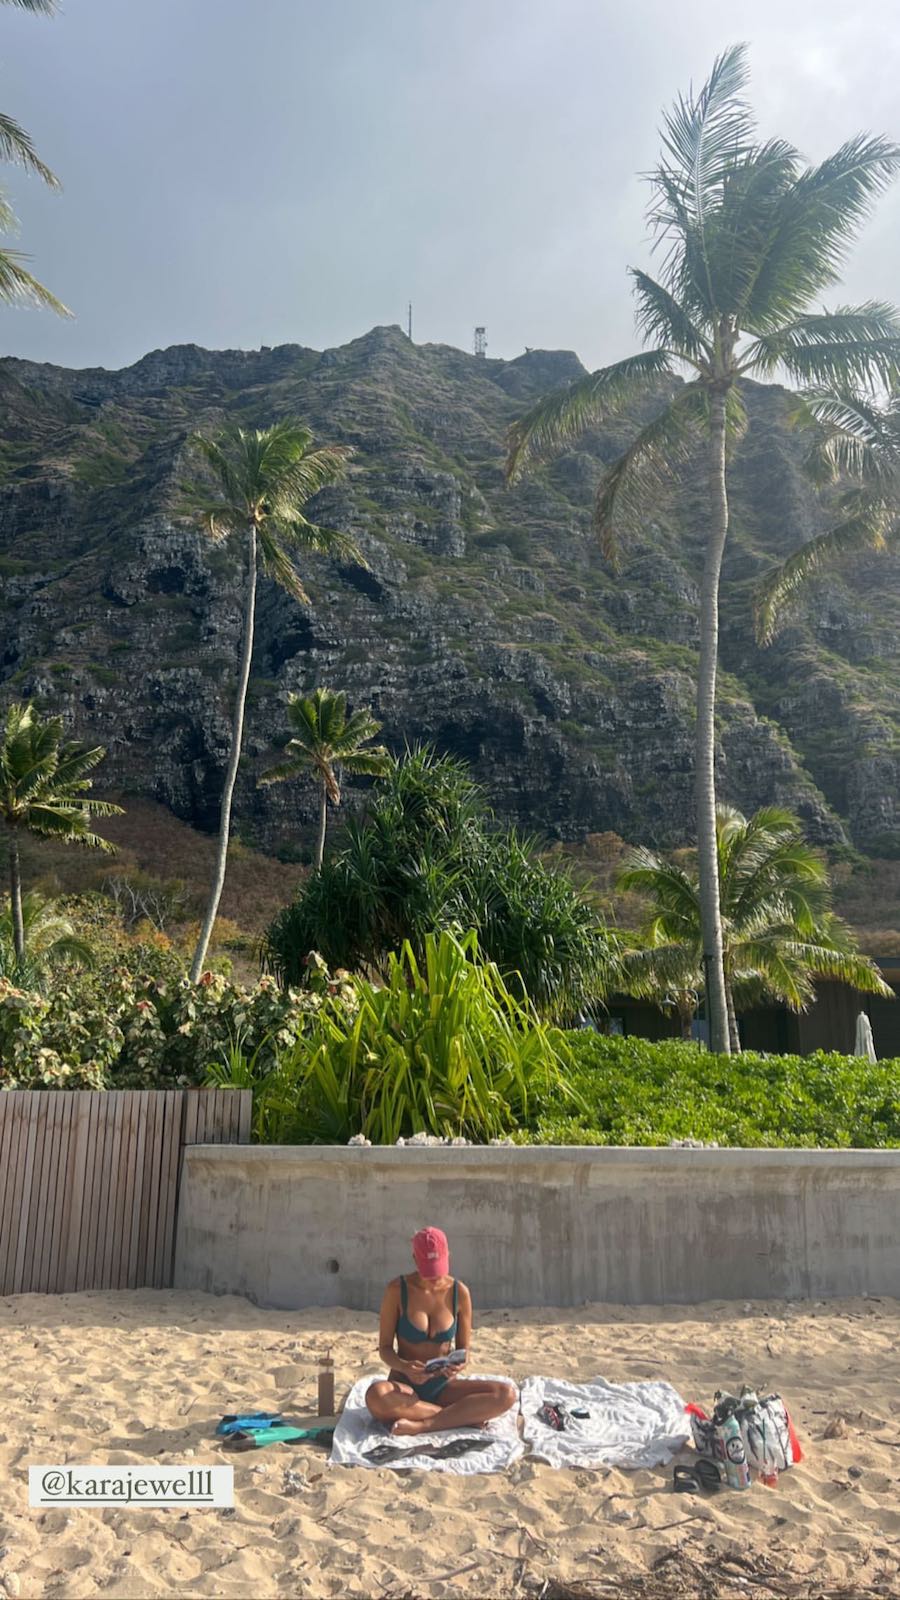 Photos n°3 : Kara del Toro is In Hawaii!